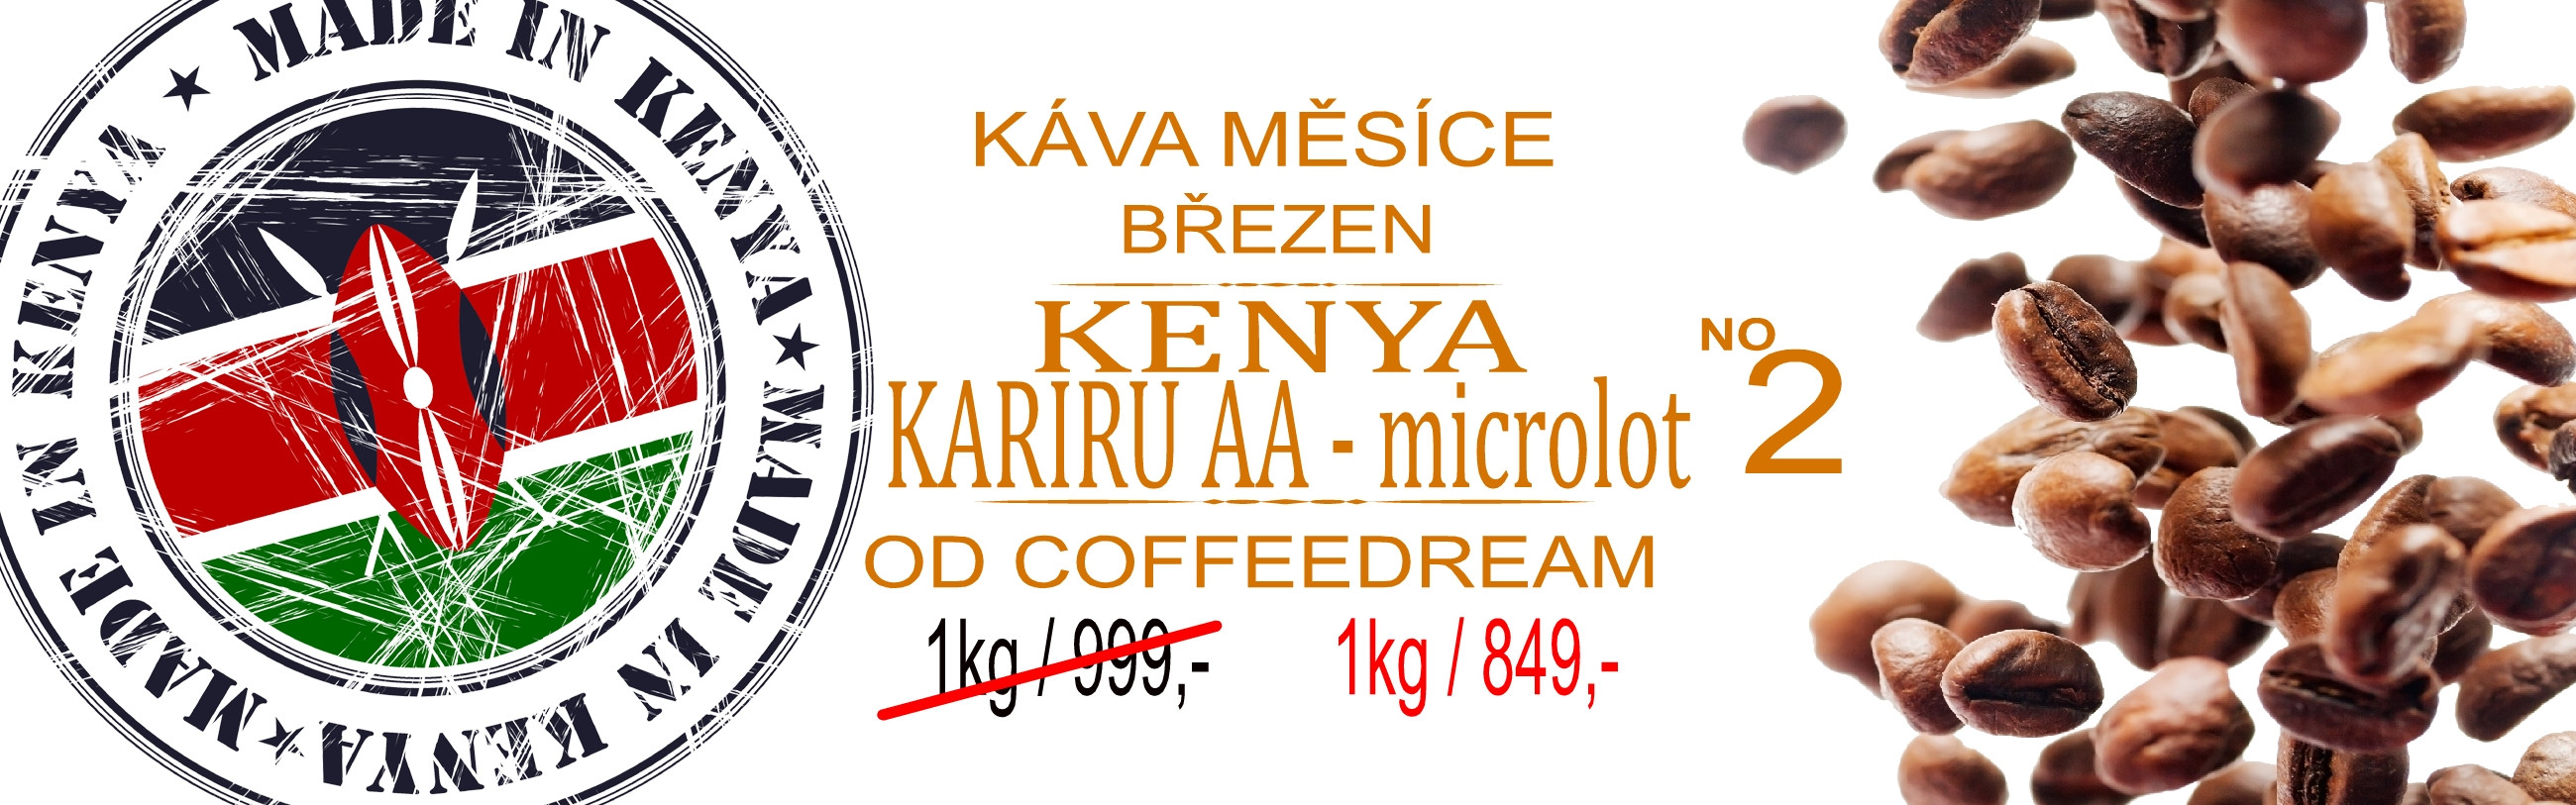 káva měsíce kenya kariru